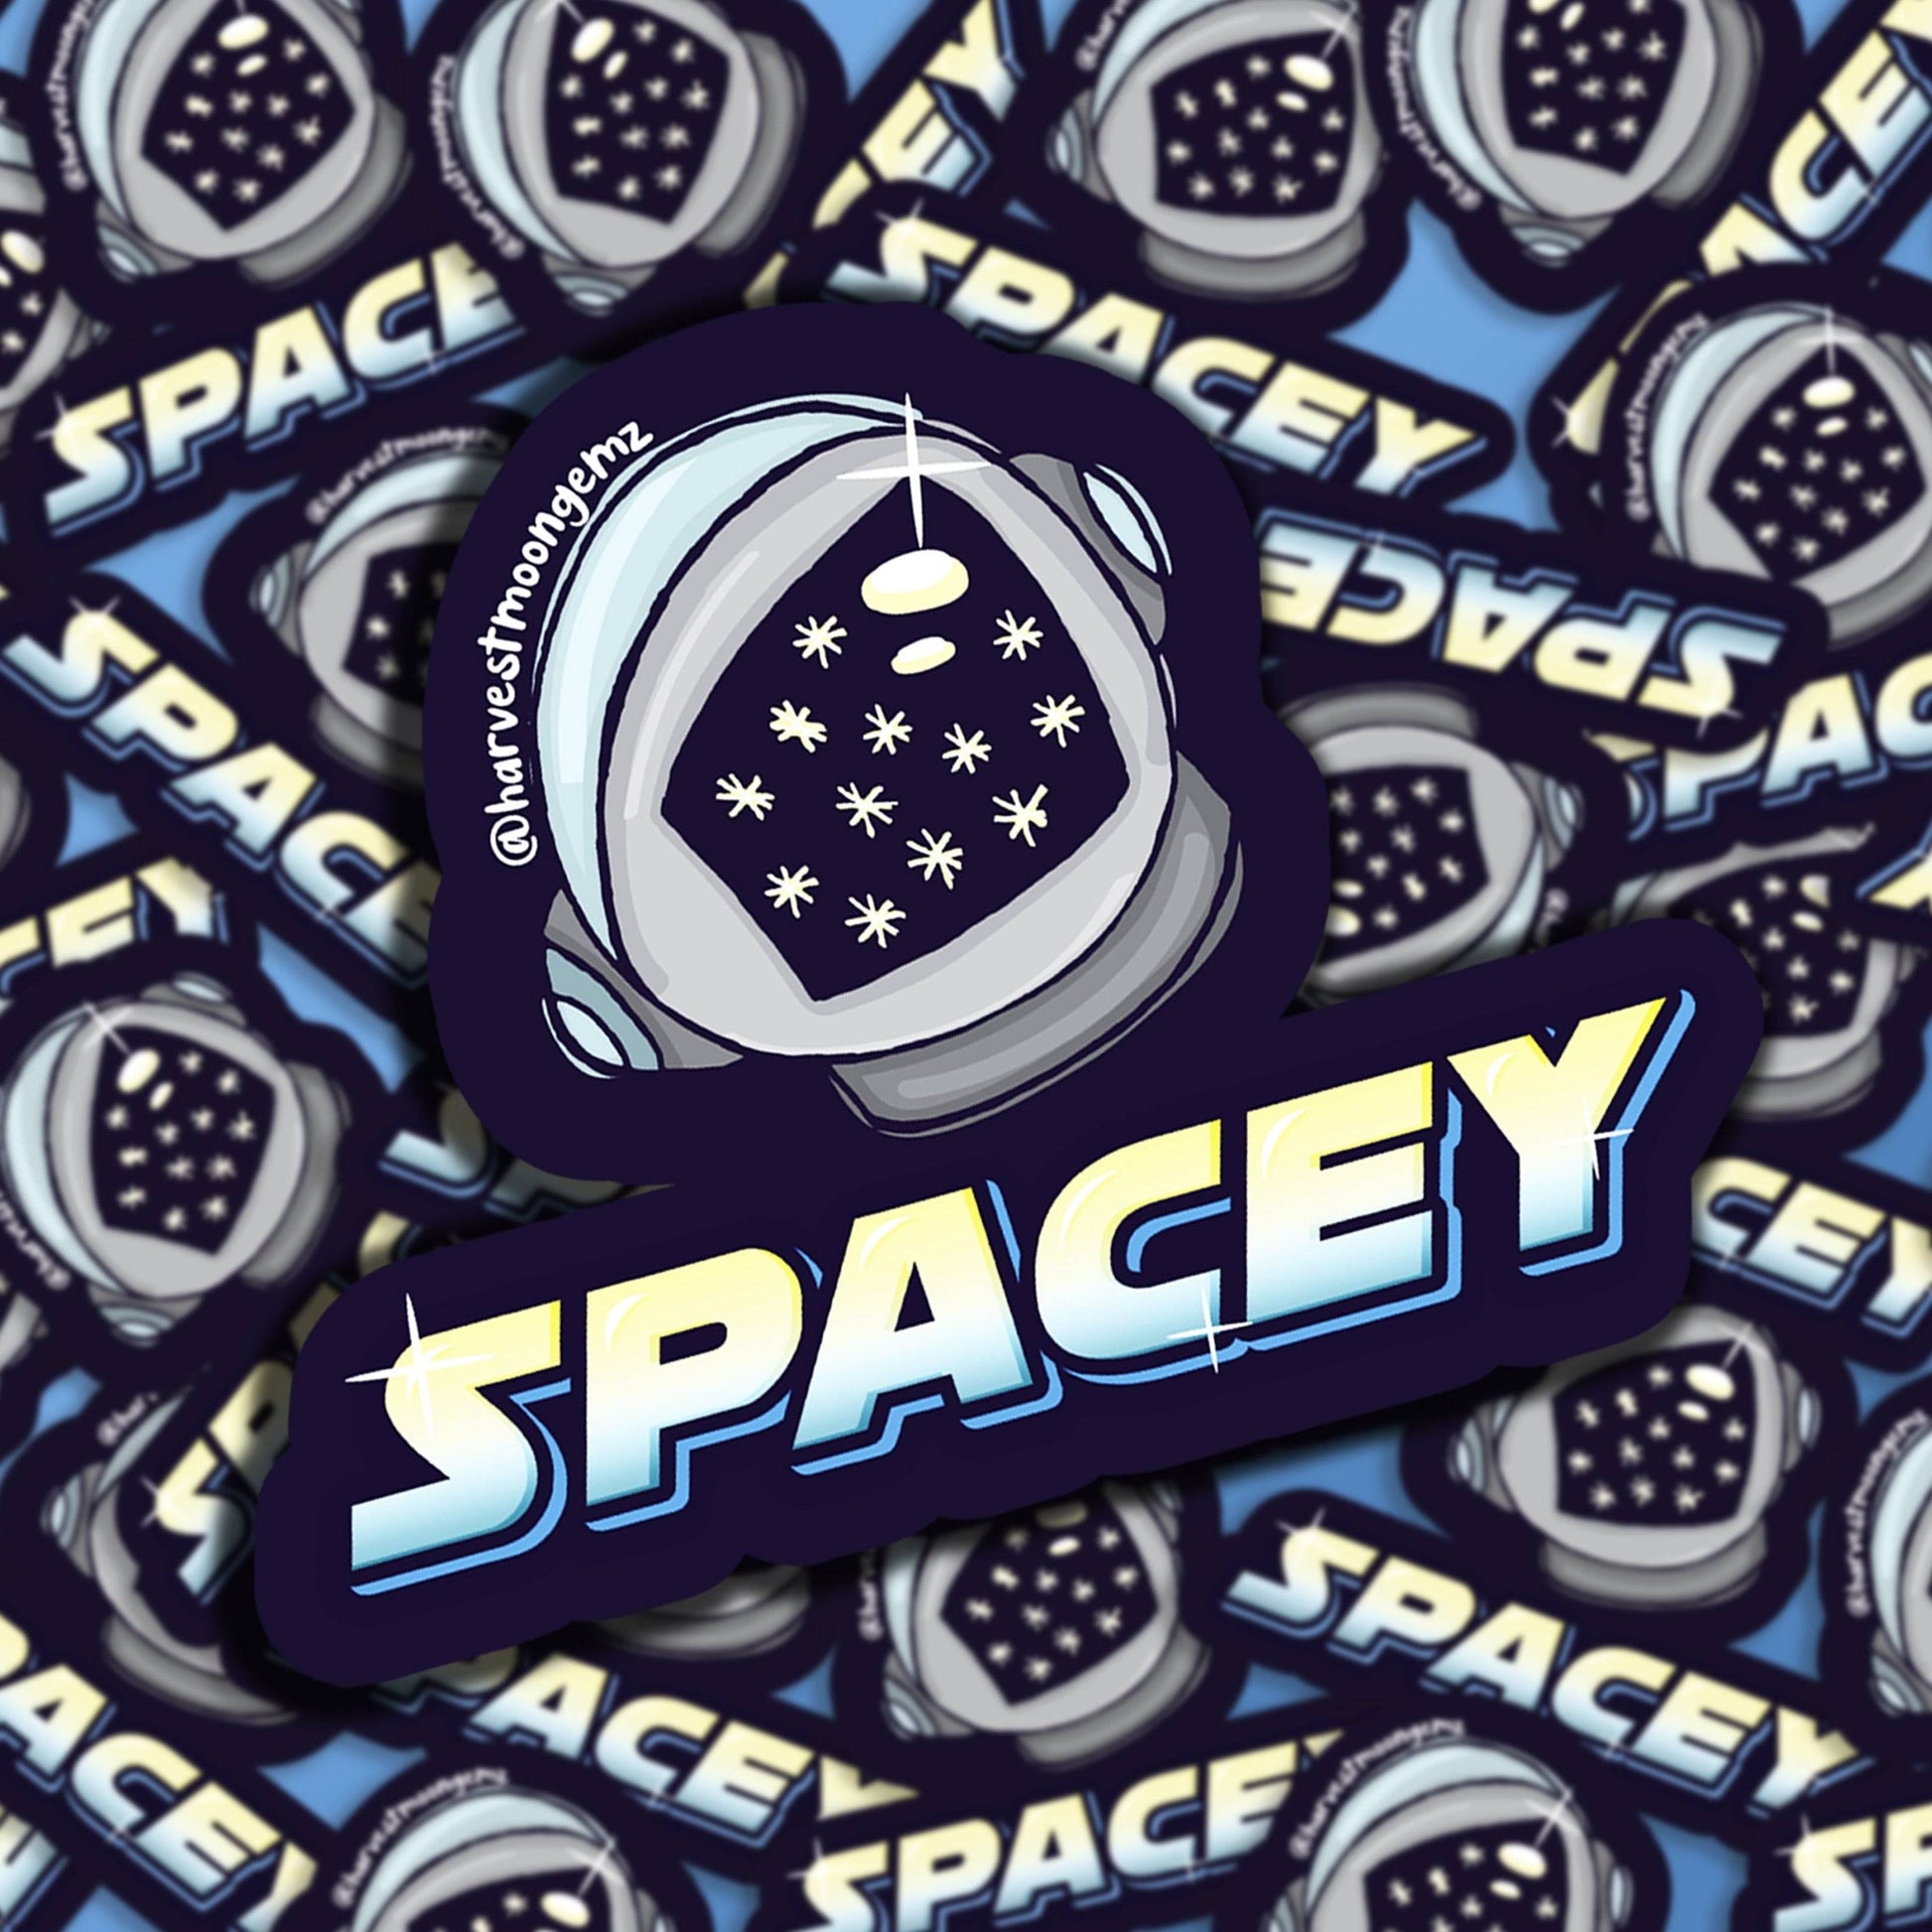 Spacey Sticker Harvest Moon Gemz